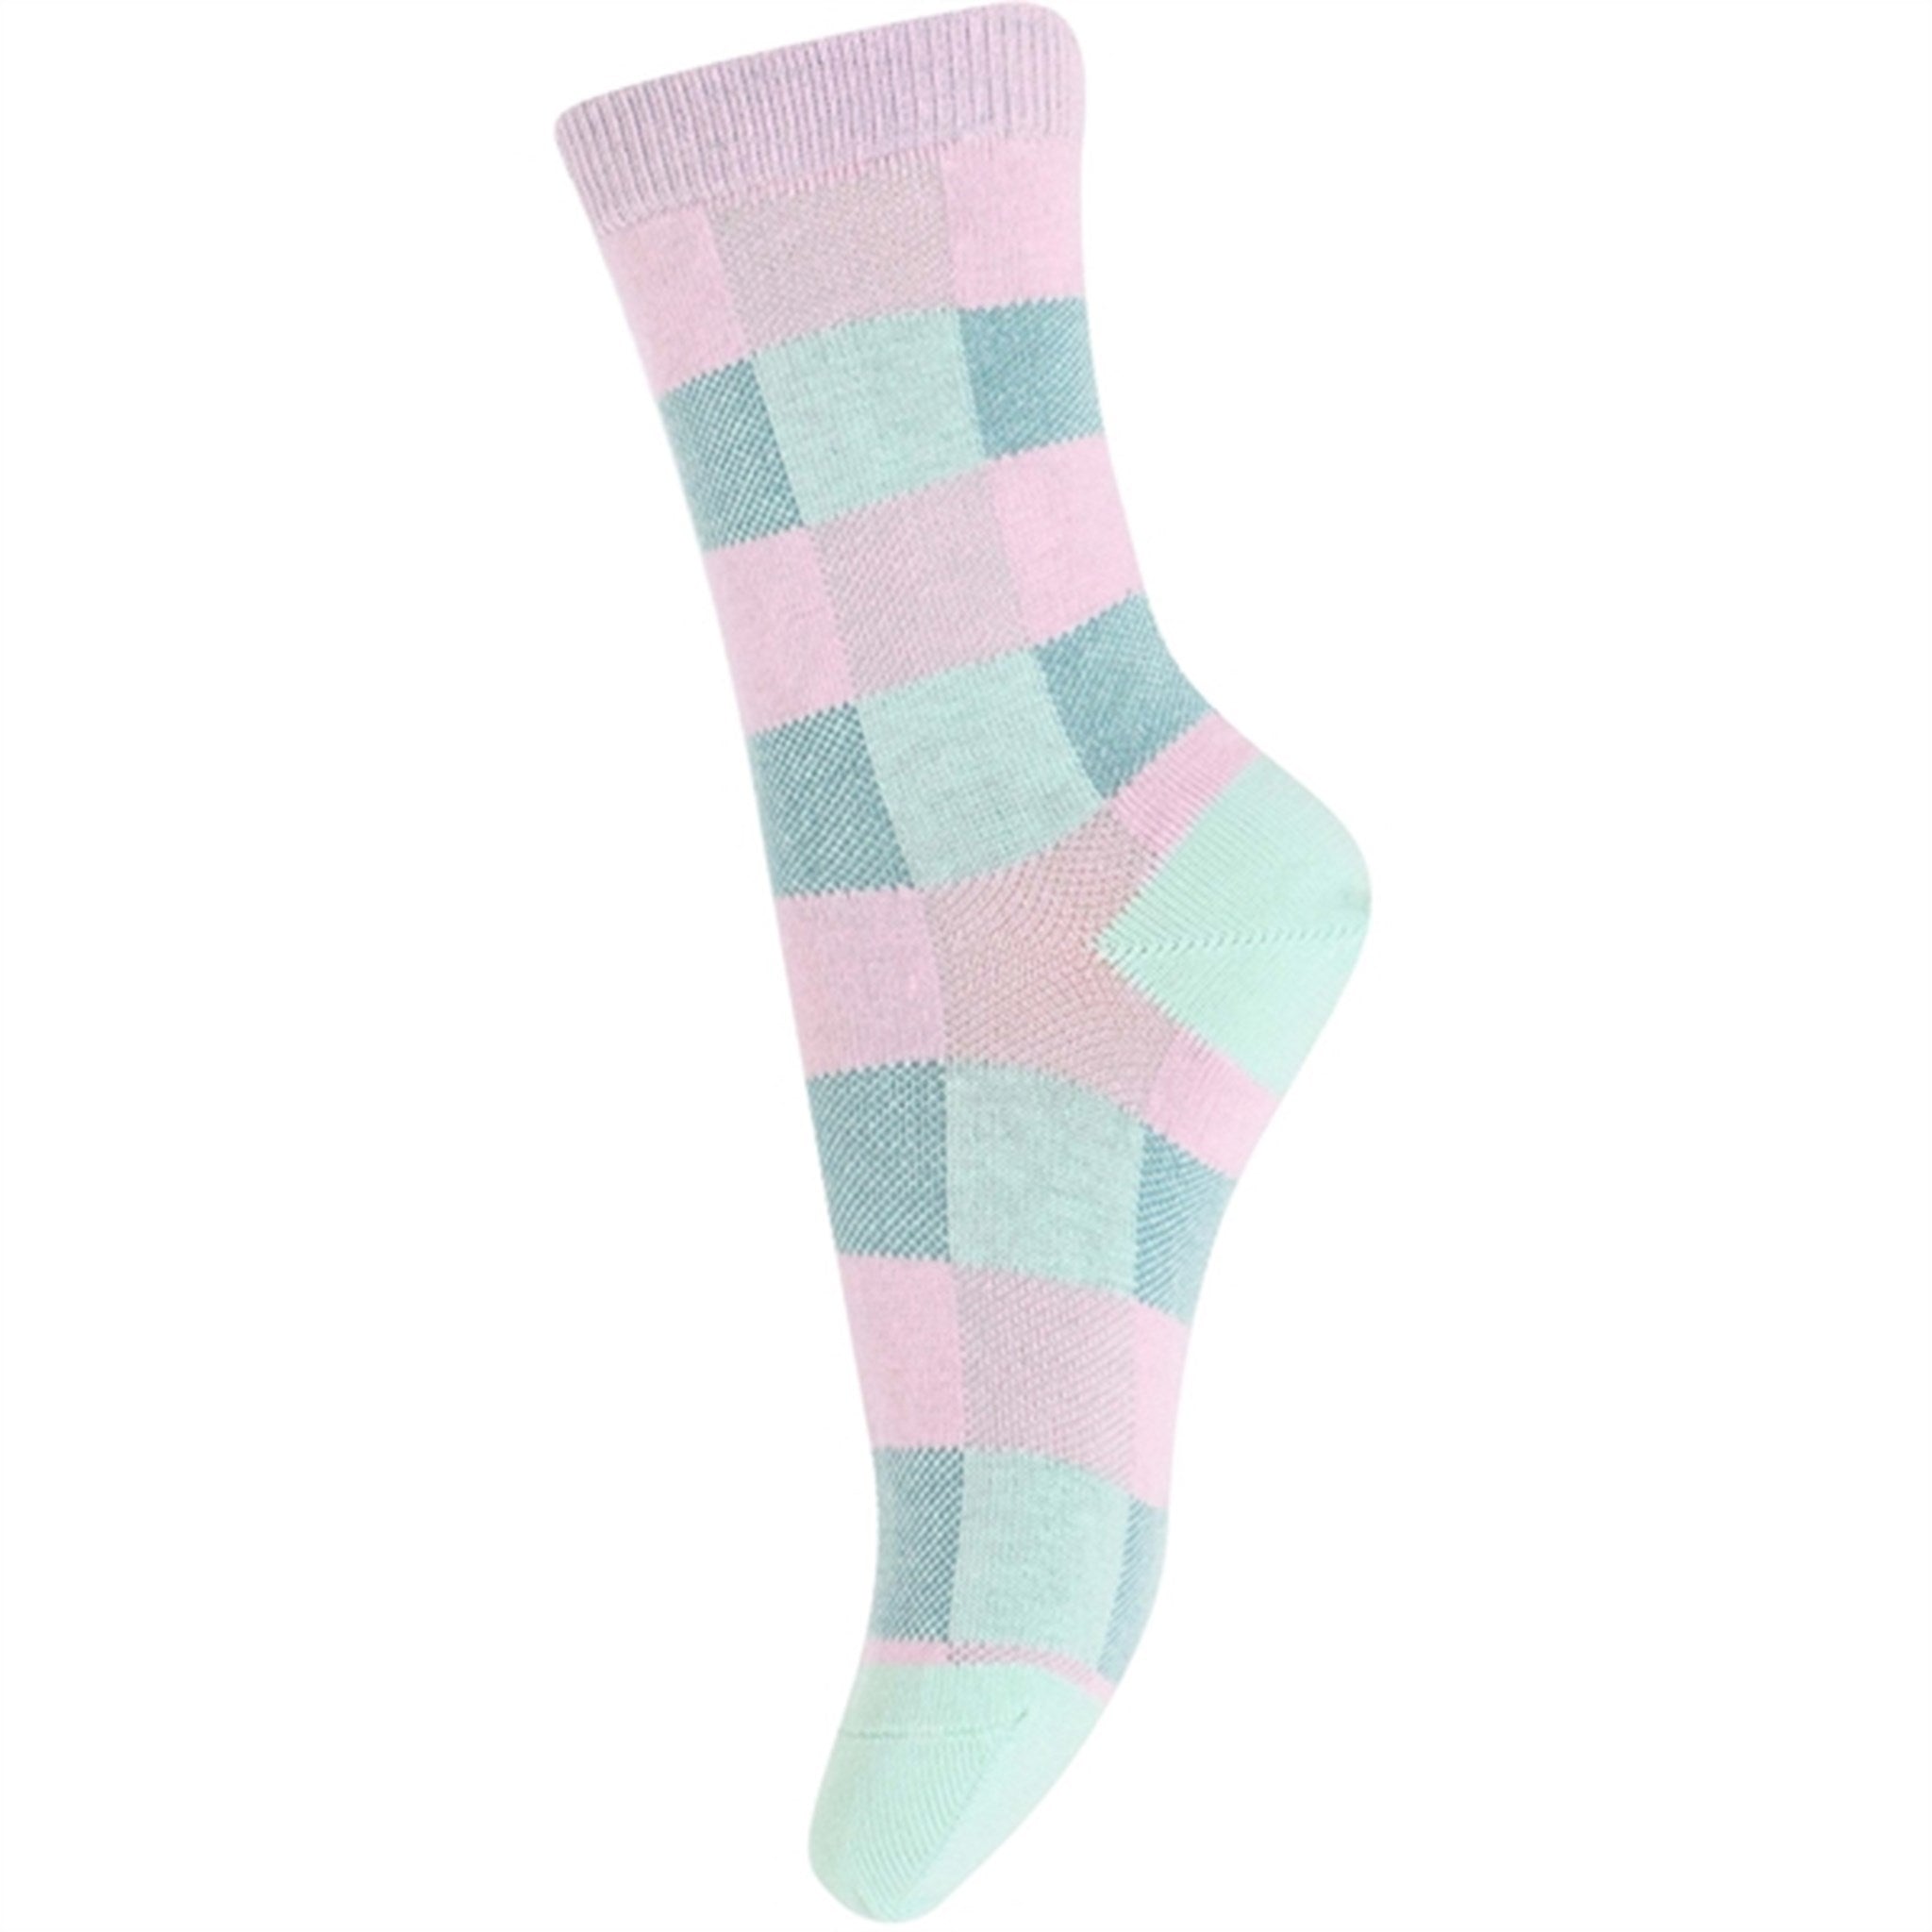 MELTON Checks Socks 3-pack Multicolors 4